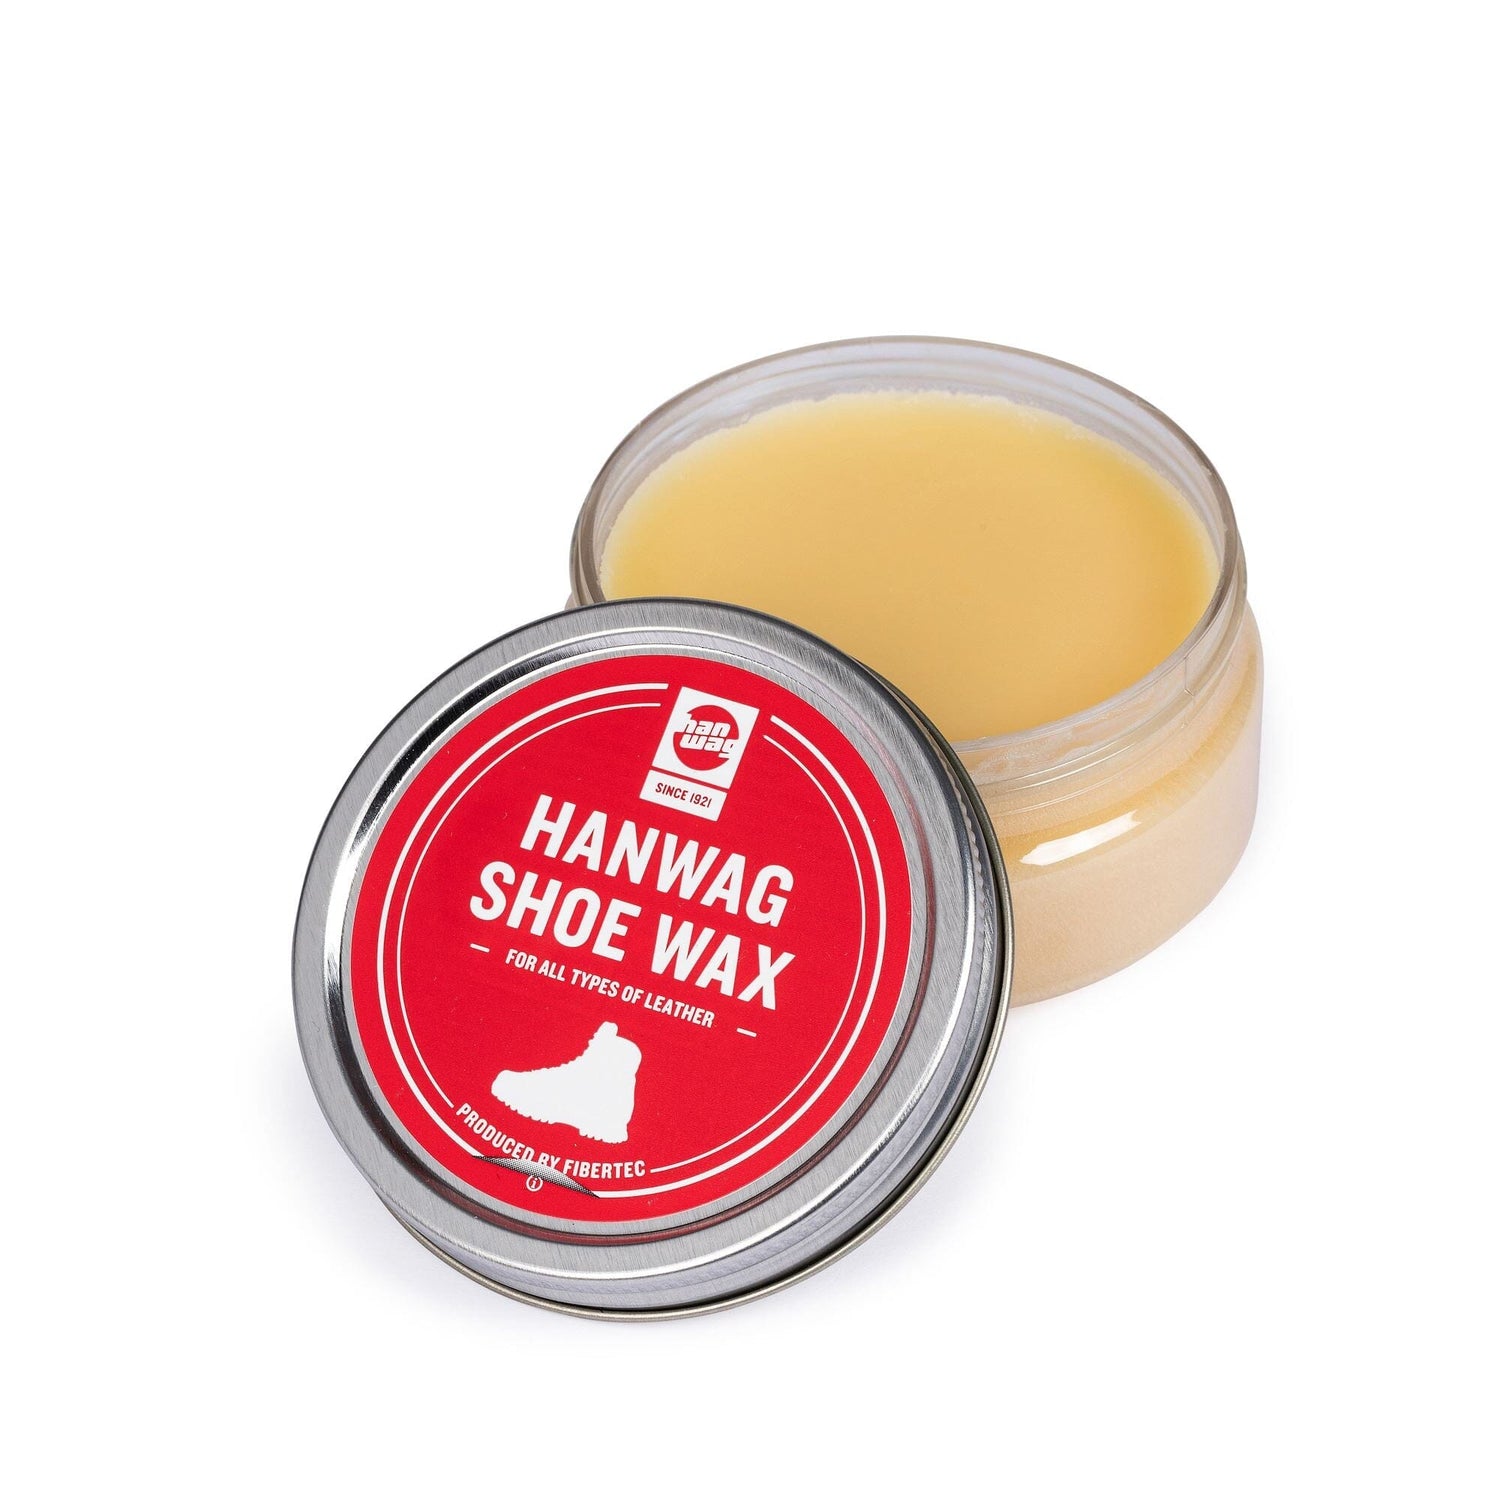 Hanwag Shoe Wax - Beeswax, carnauba wax and lanolin Care products